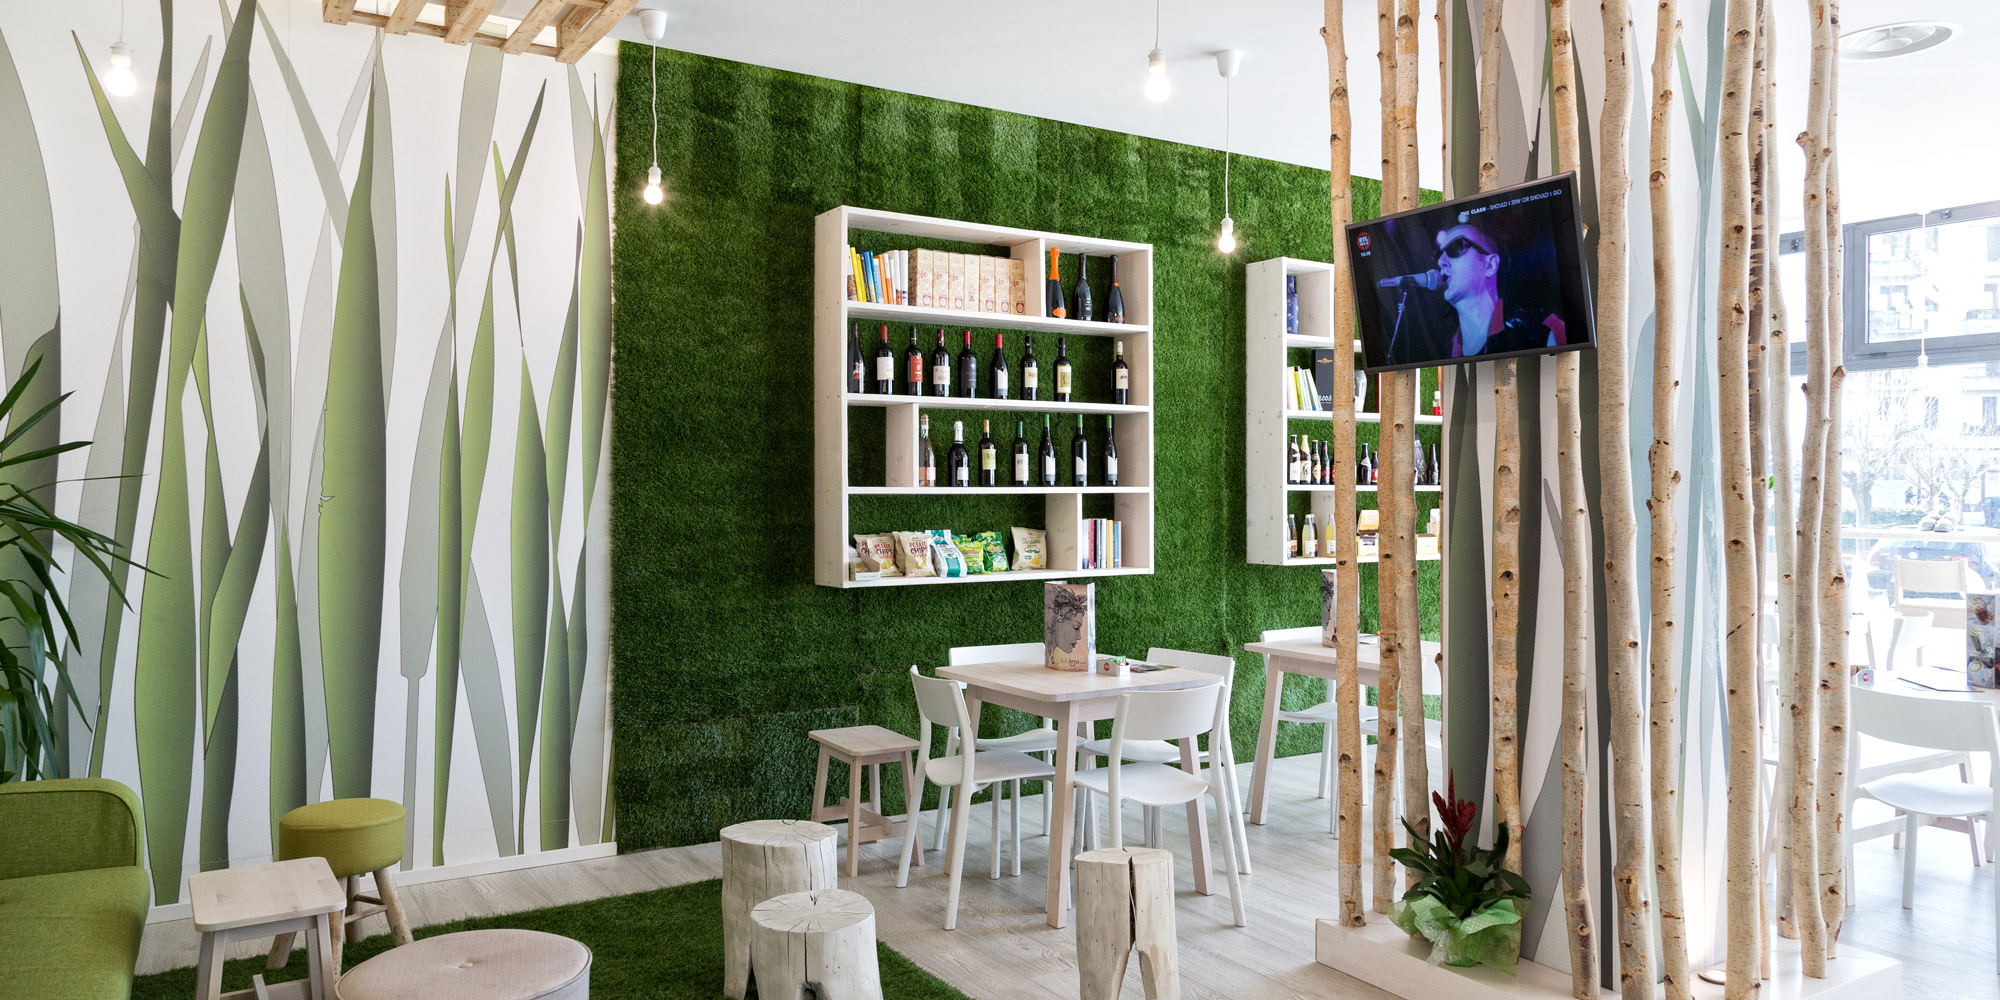 Bio Lino Caffè in Aulla - Interior Design - Branding - Marco Bonfigli Architect